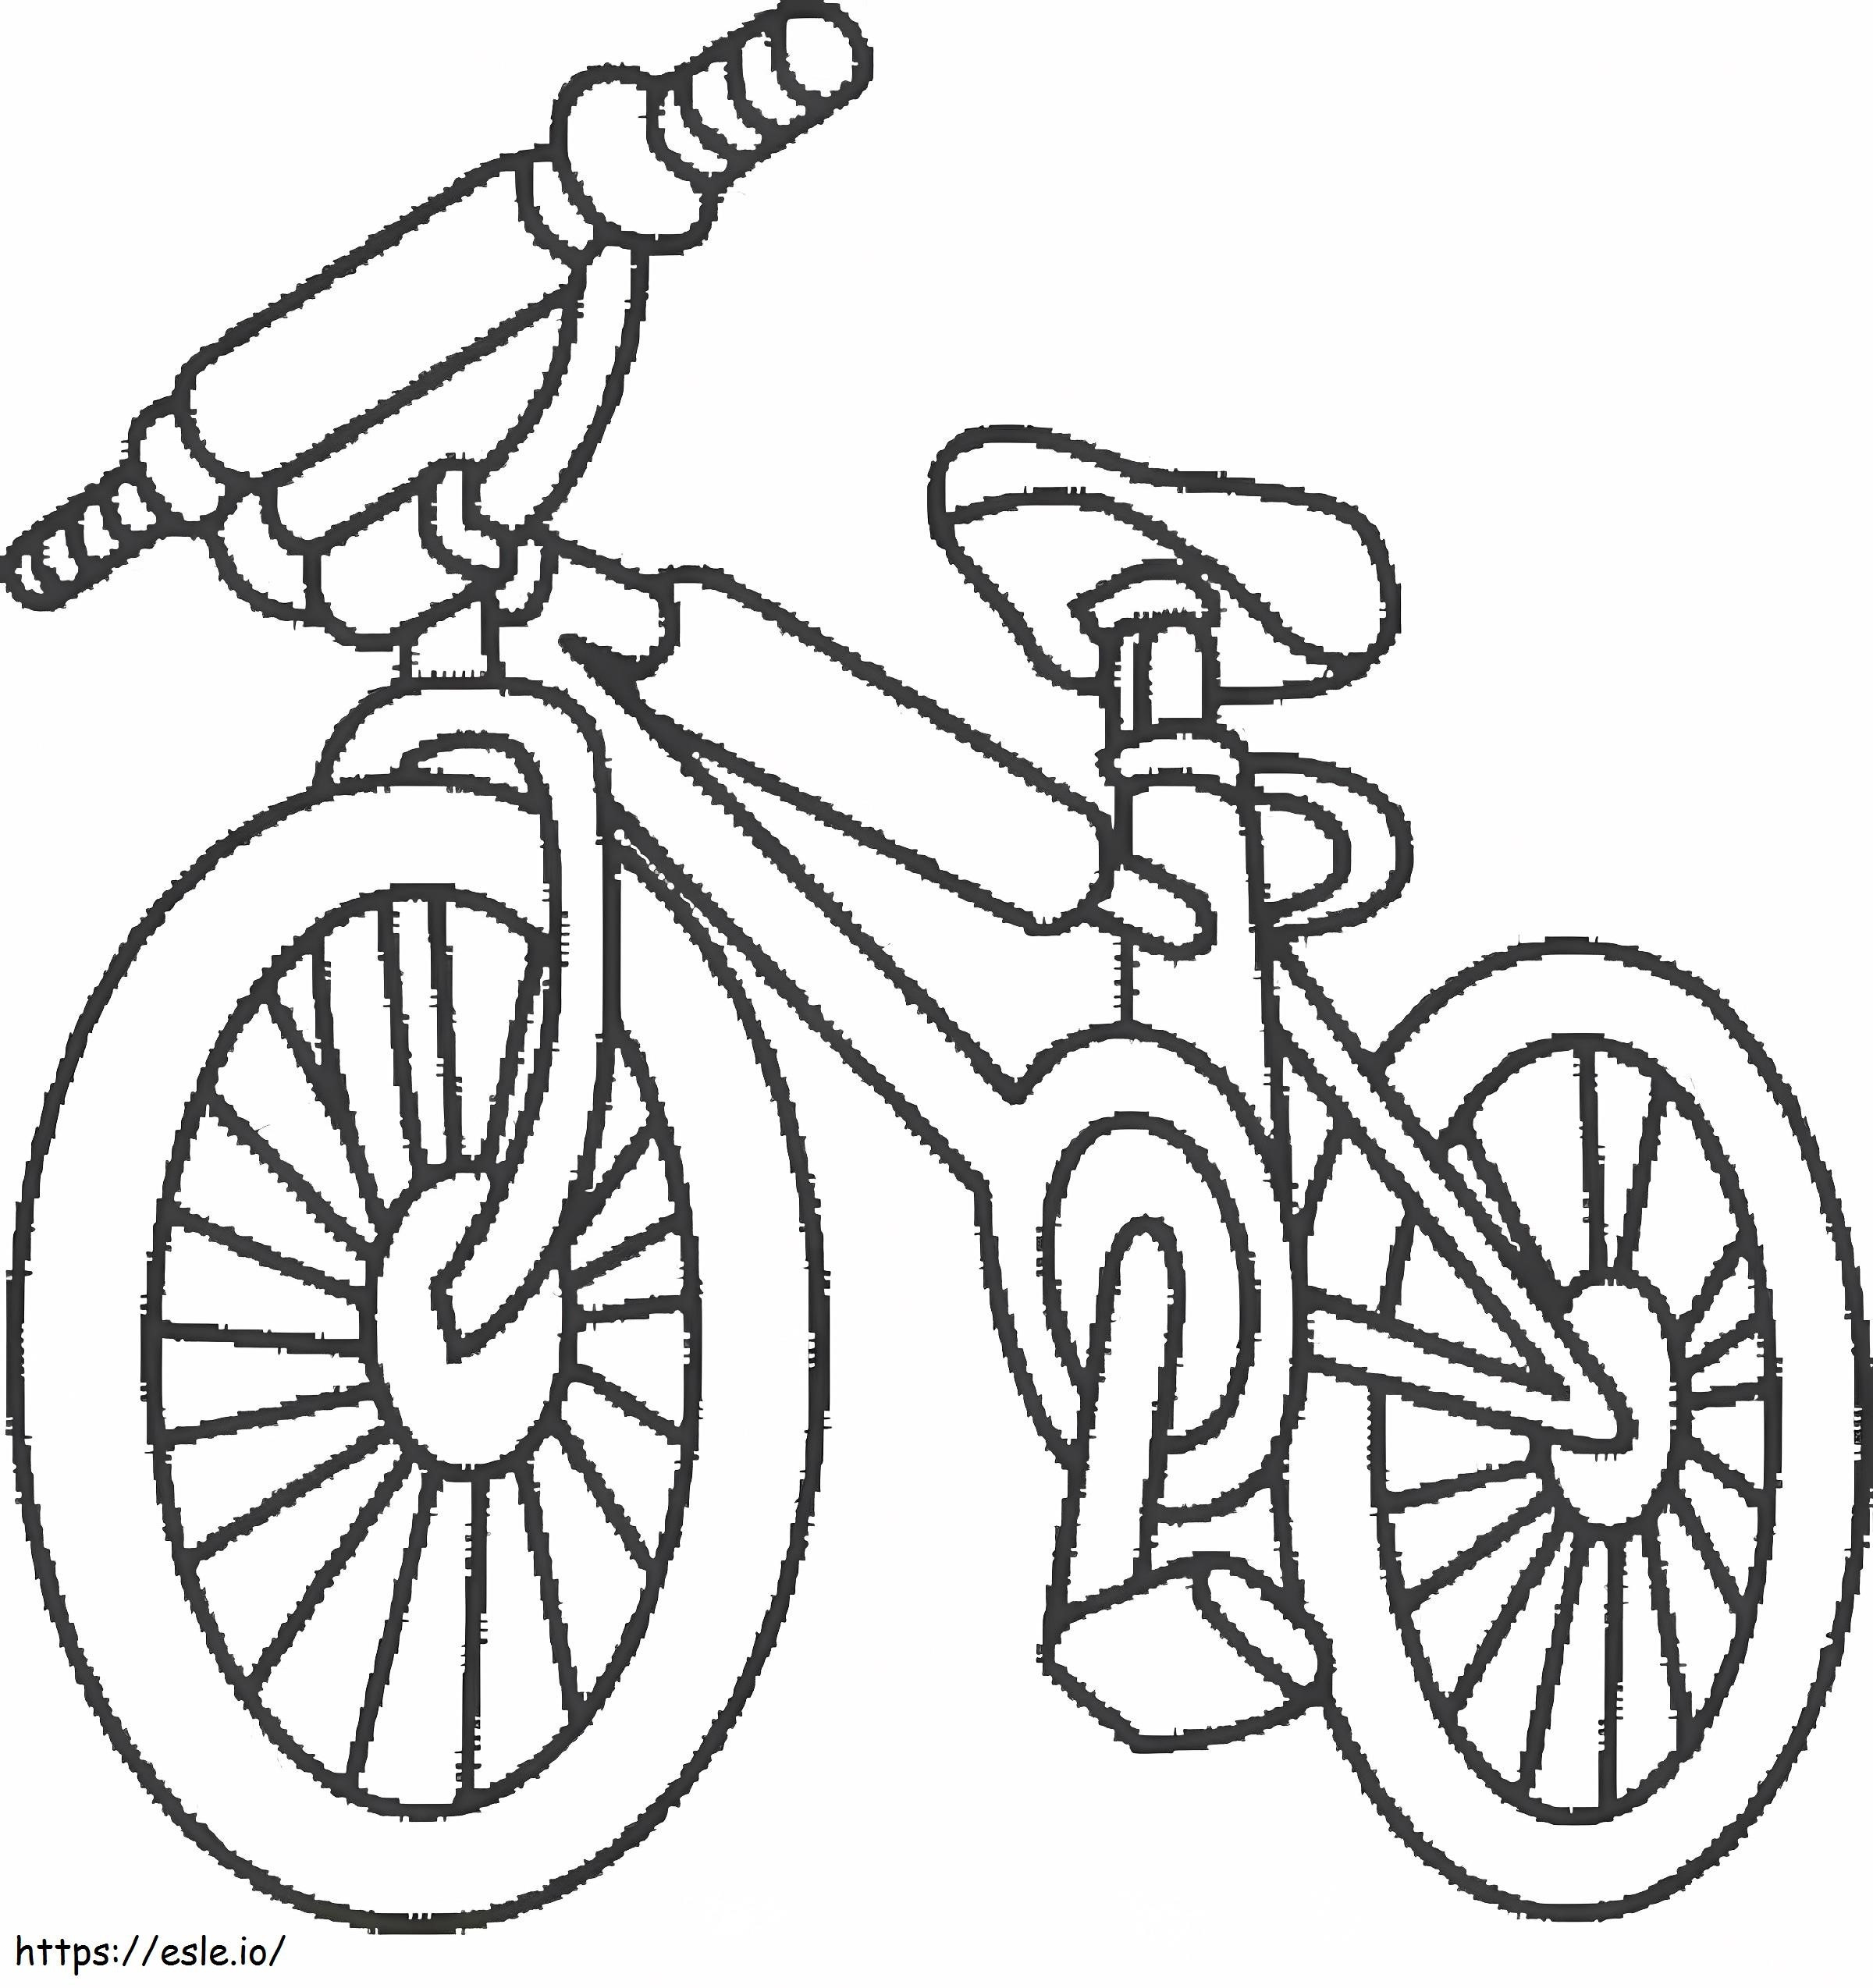 Fahrrad zum ausdrucken ausmalbilder